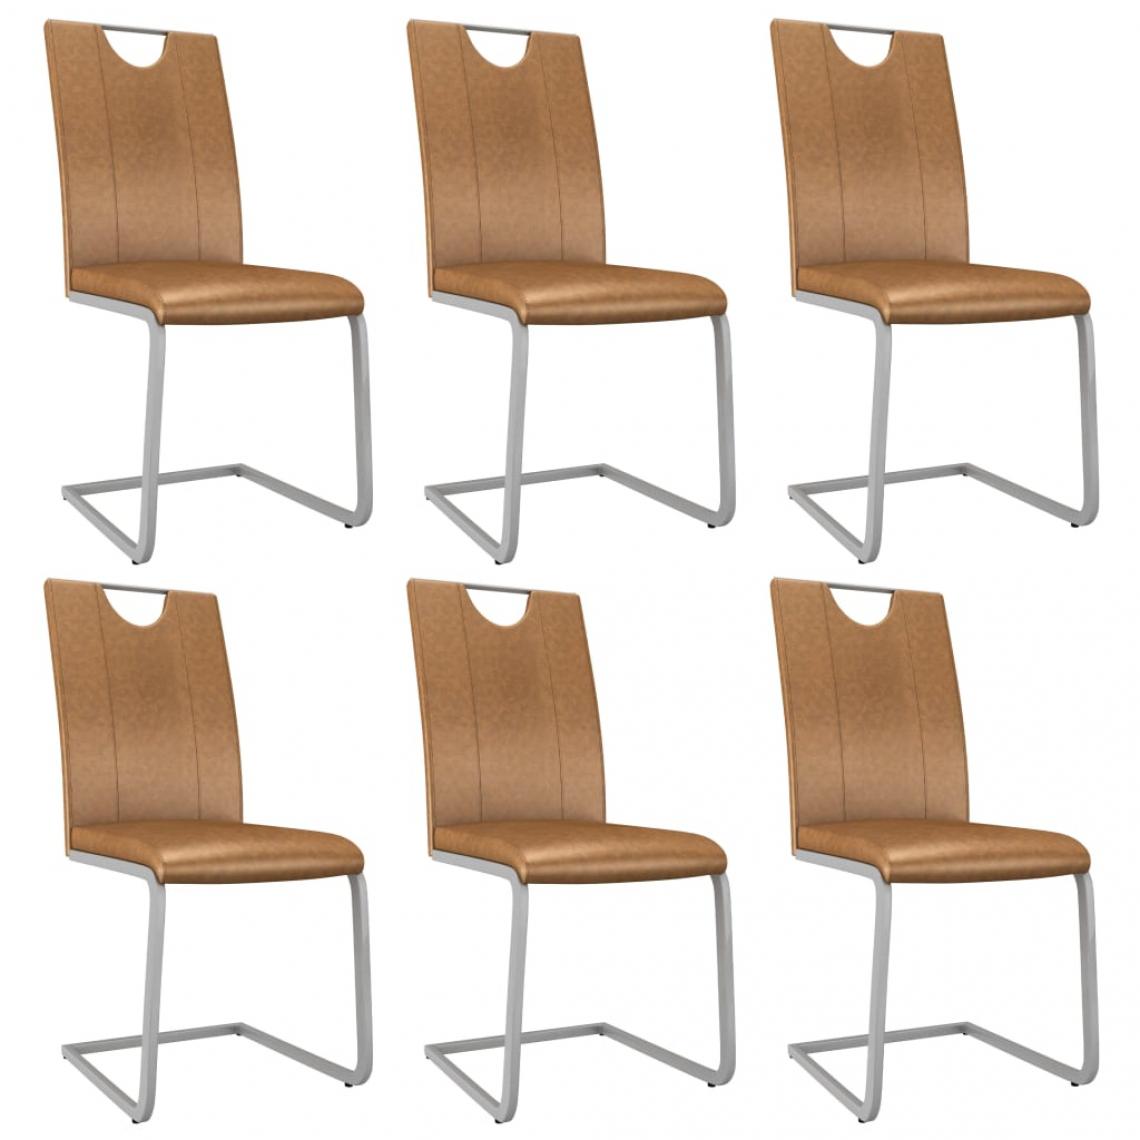 Decoshop26 - Lot de 6 chaises de salle à manger cuisine design contemporain similicuir marron CDS022608 - Chaises